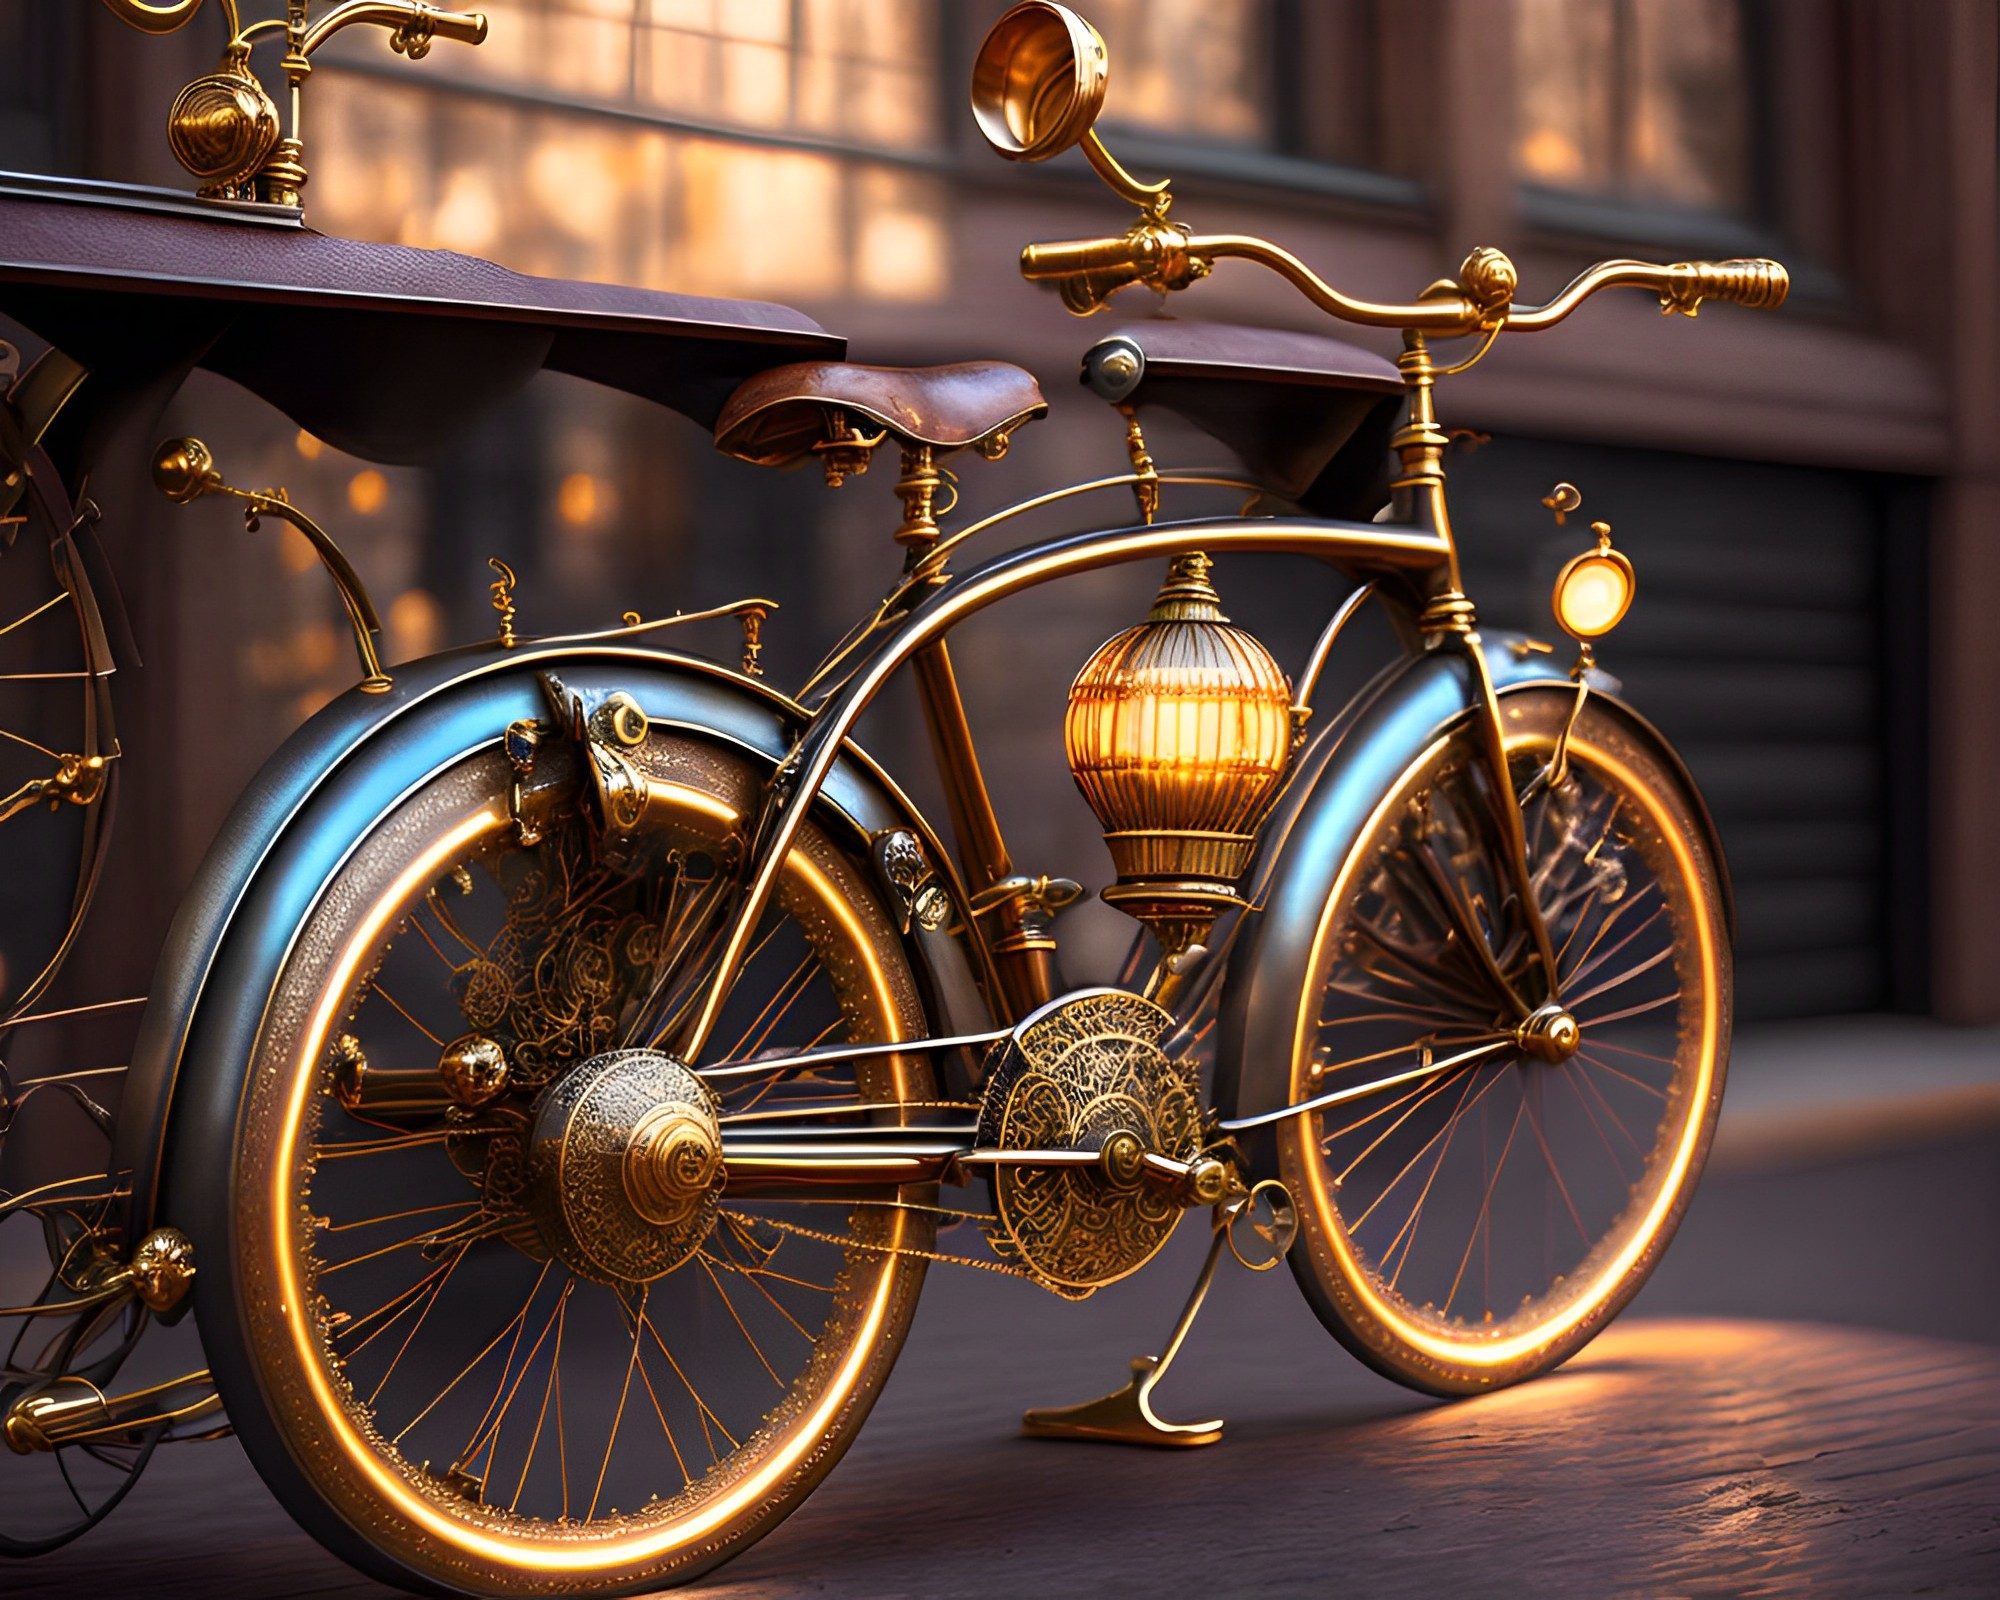 サイバーパンク風のゴールデン自転車ときれいな街並み